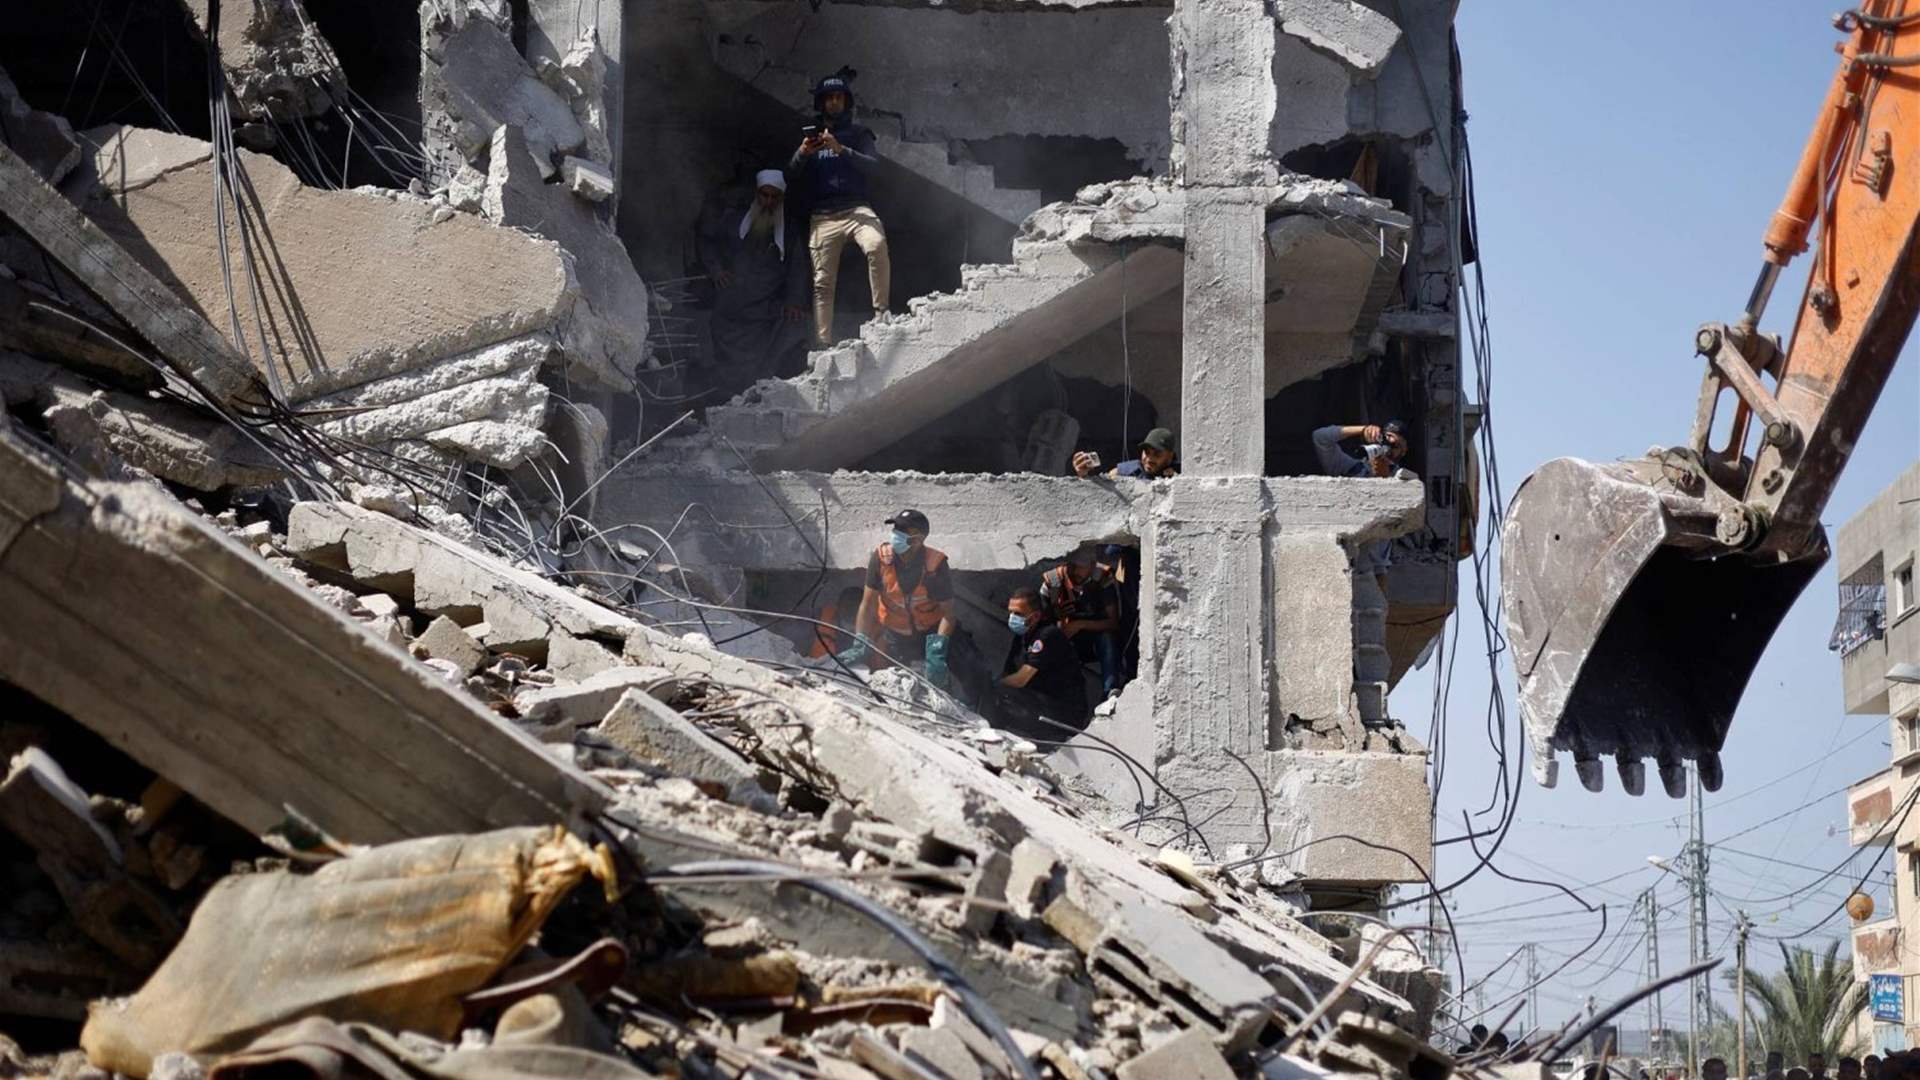 الأمم المتحدة تقدّر كلفة إعادة إعمار غزة بما بين 30 إلى 40 مليار دولار